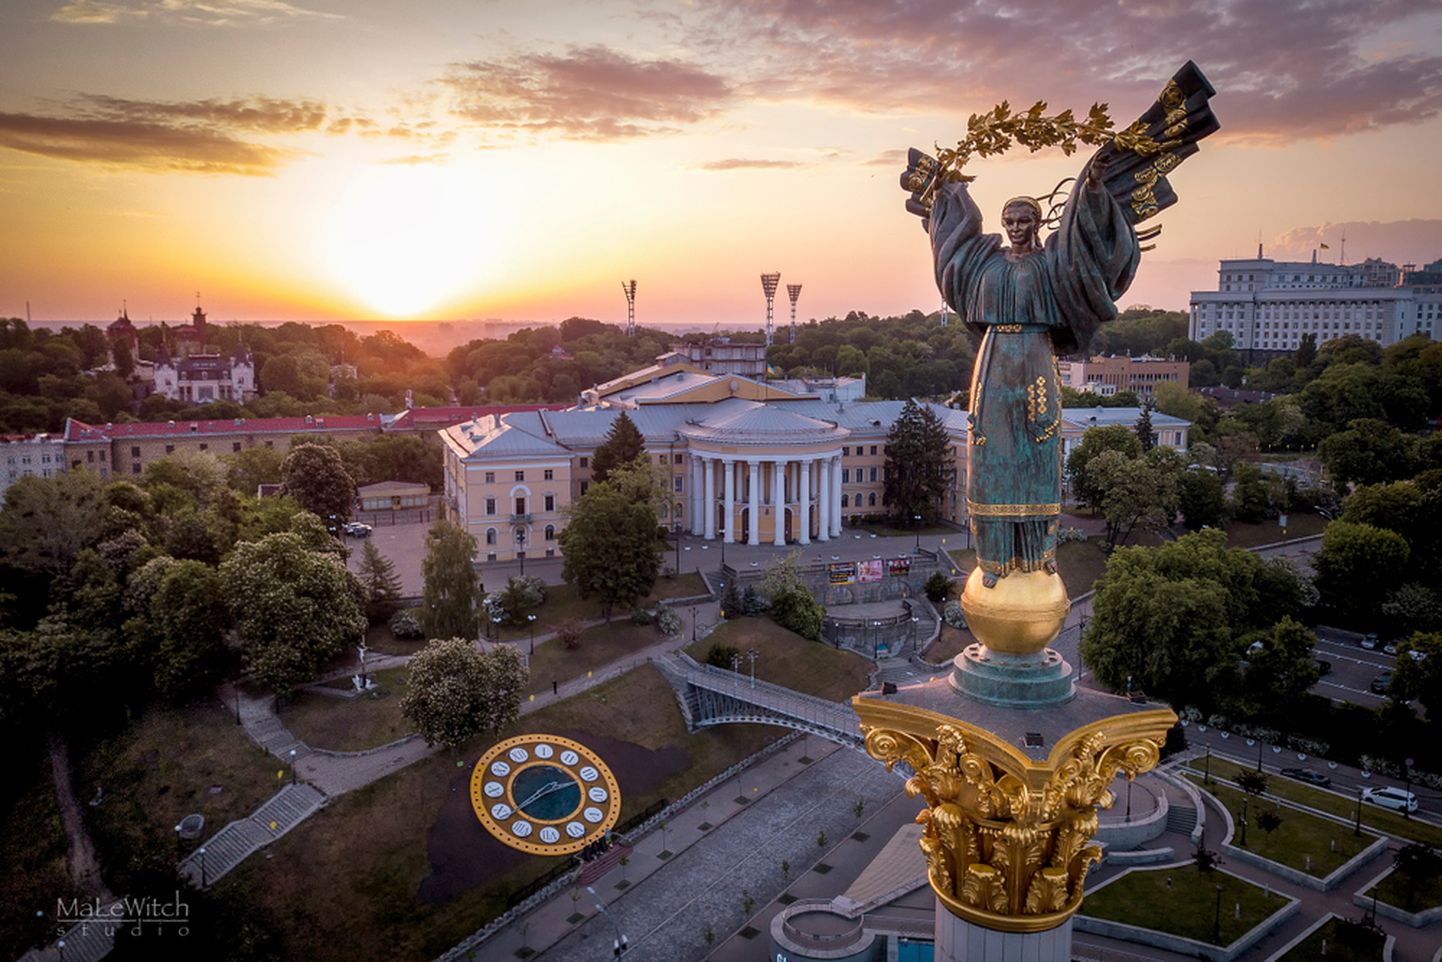 Киев. Иллюстративное фото.